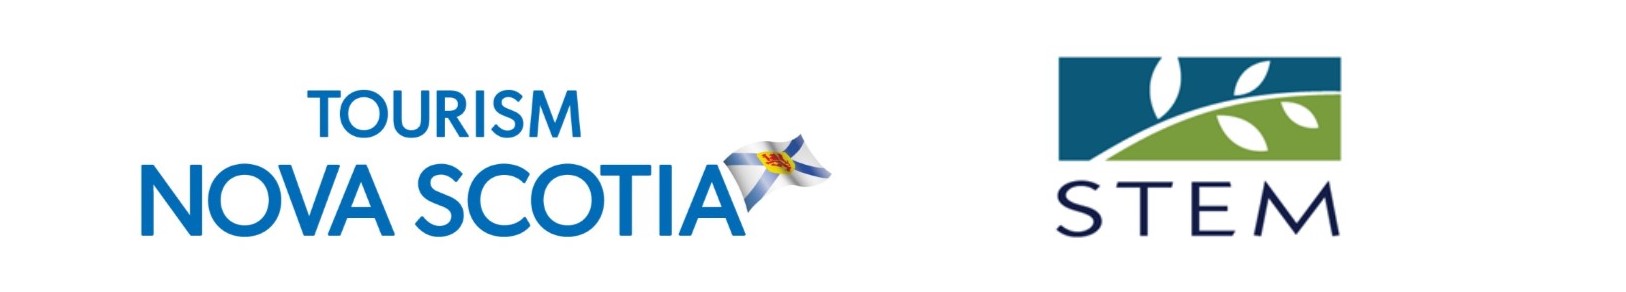 Tourism Nova Scotia and STEM Consulting logos